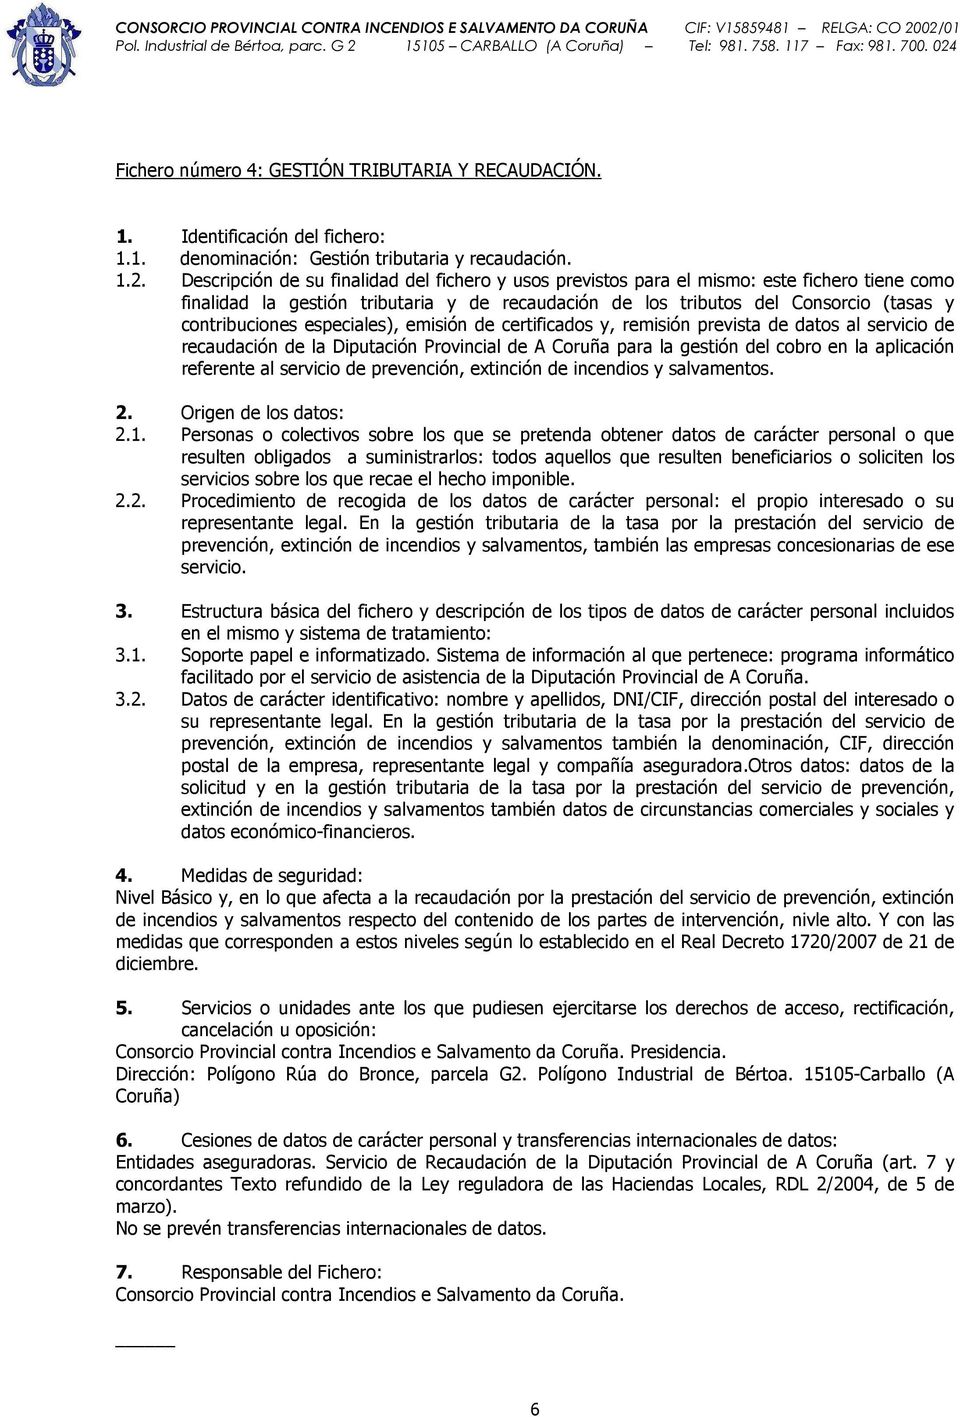 especiales), emisión de certificados y, remisión prevista de datos al servicio de recaudación de la Diputación Provincial de A Coruña para la gestión del cobro en la aplicación referente al servicio